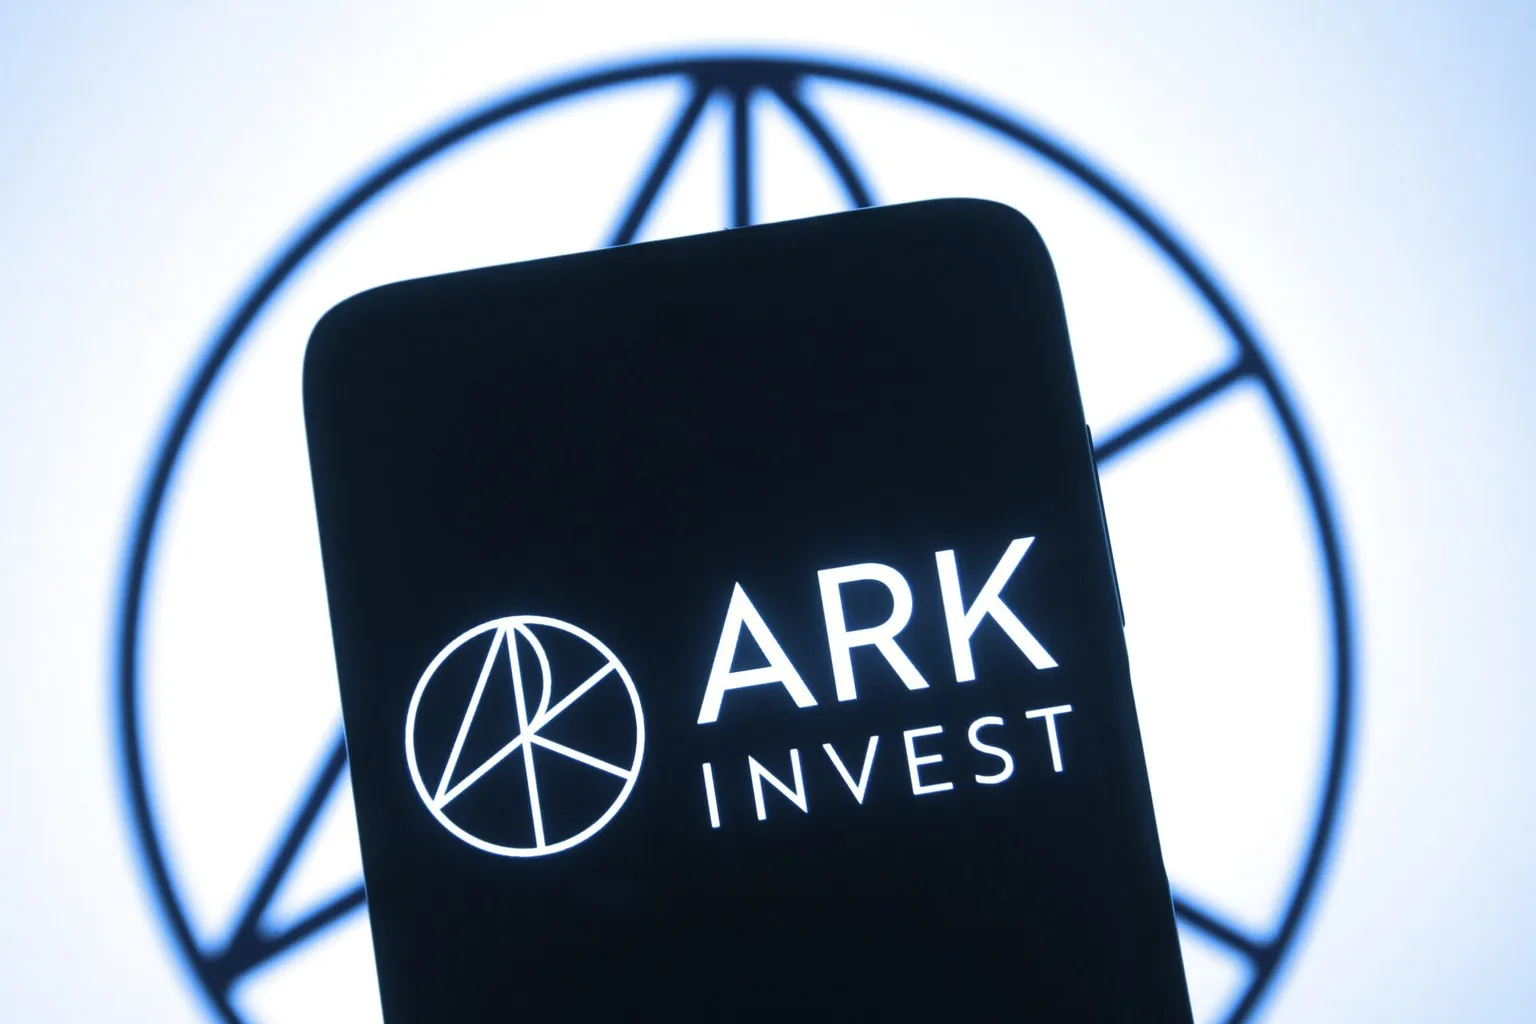 ARK se centra en las inversiones en innovación disruptiva. Imagen: Shutterstock.